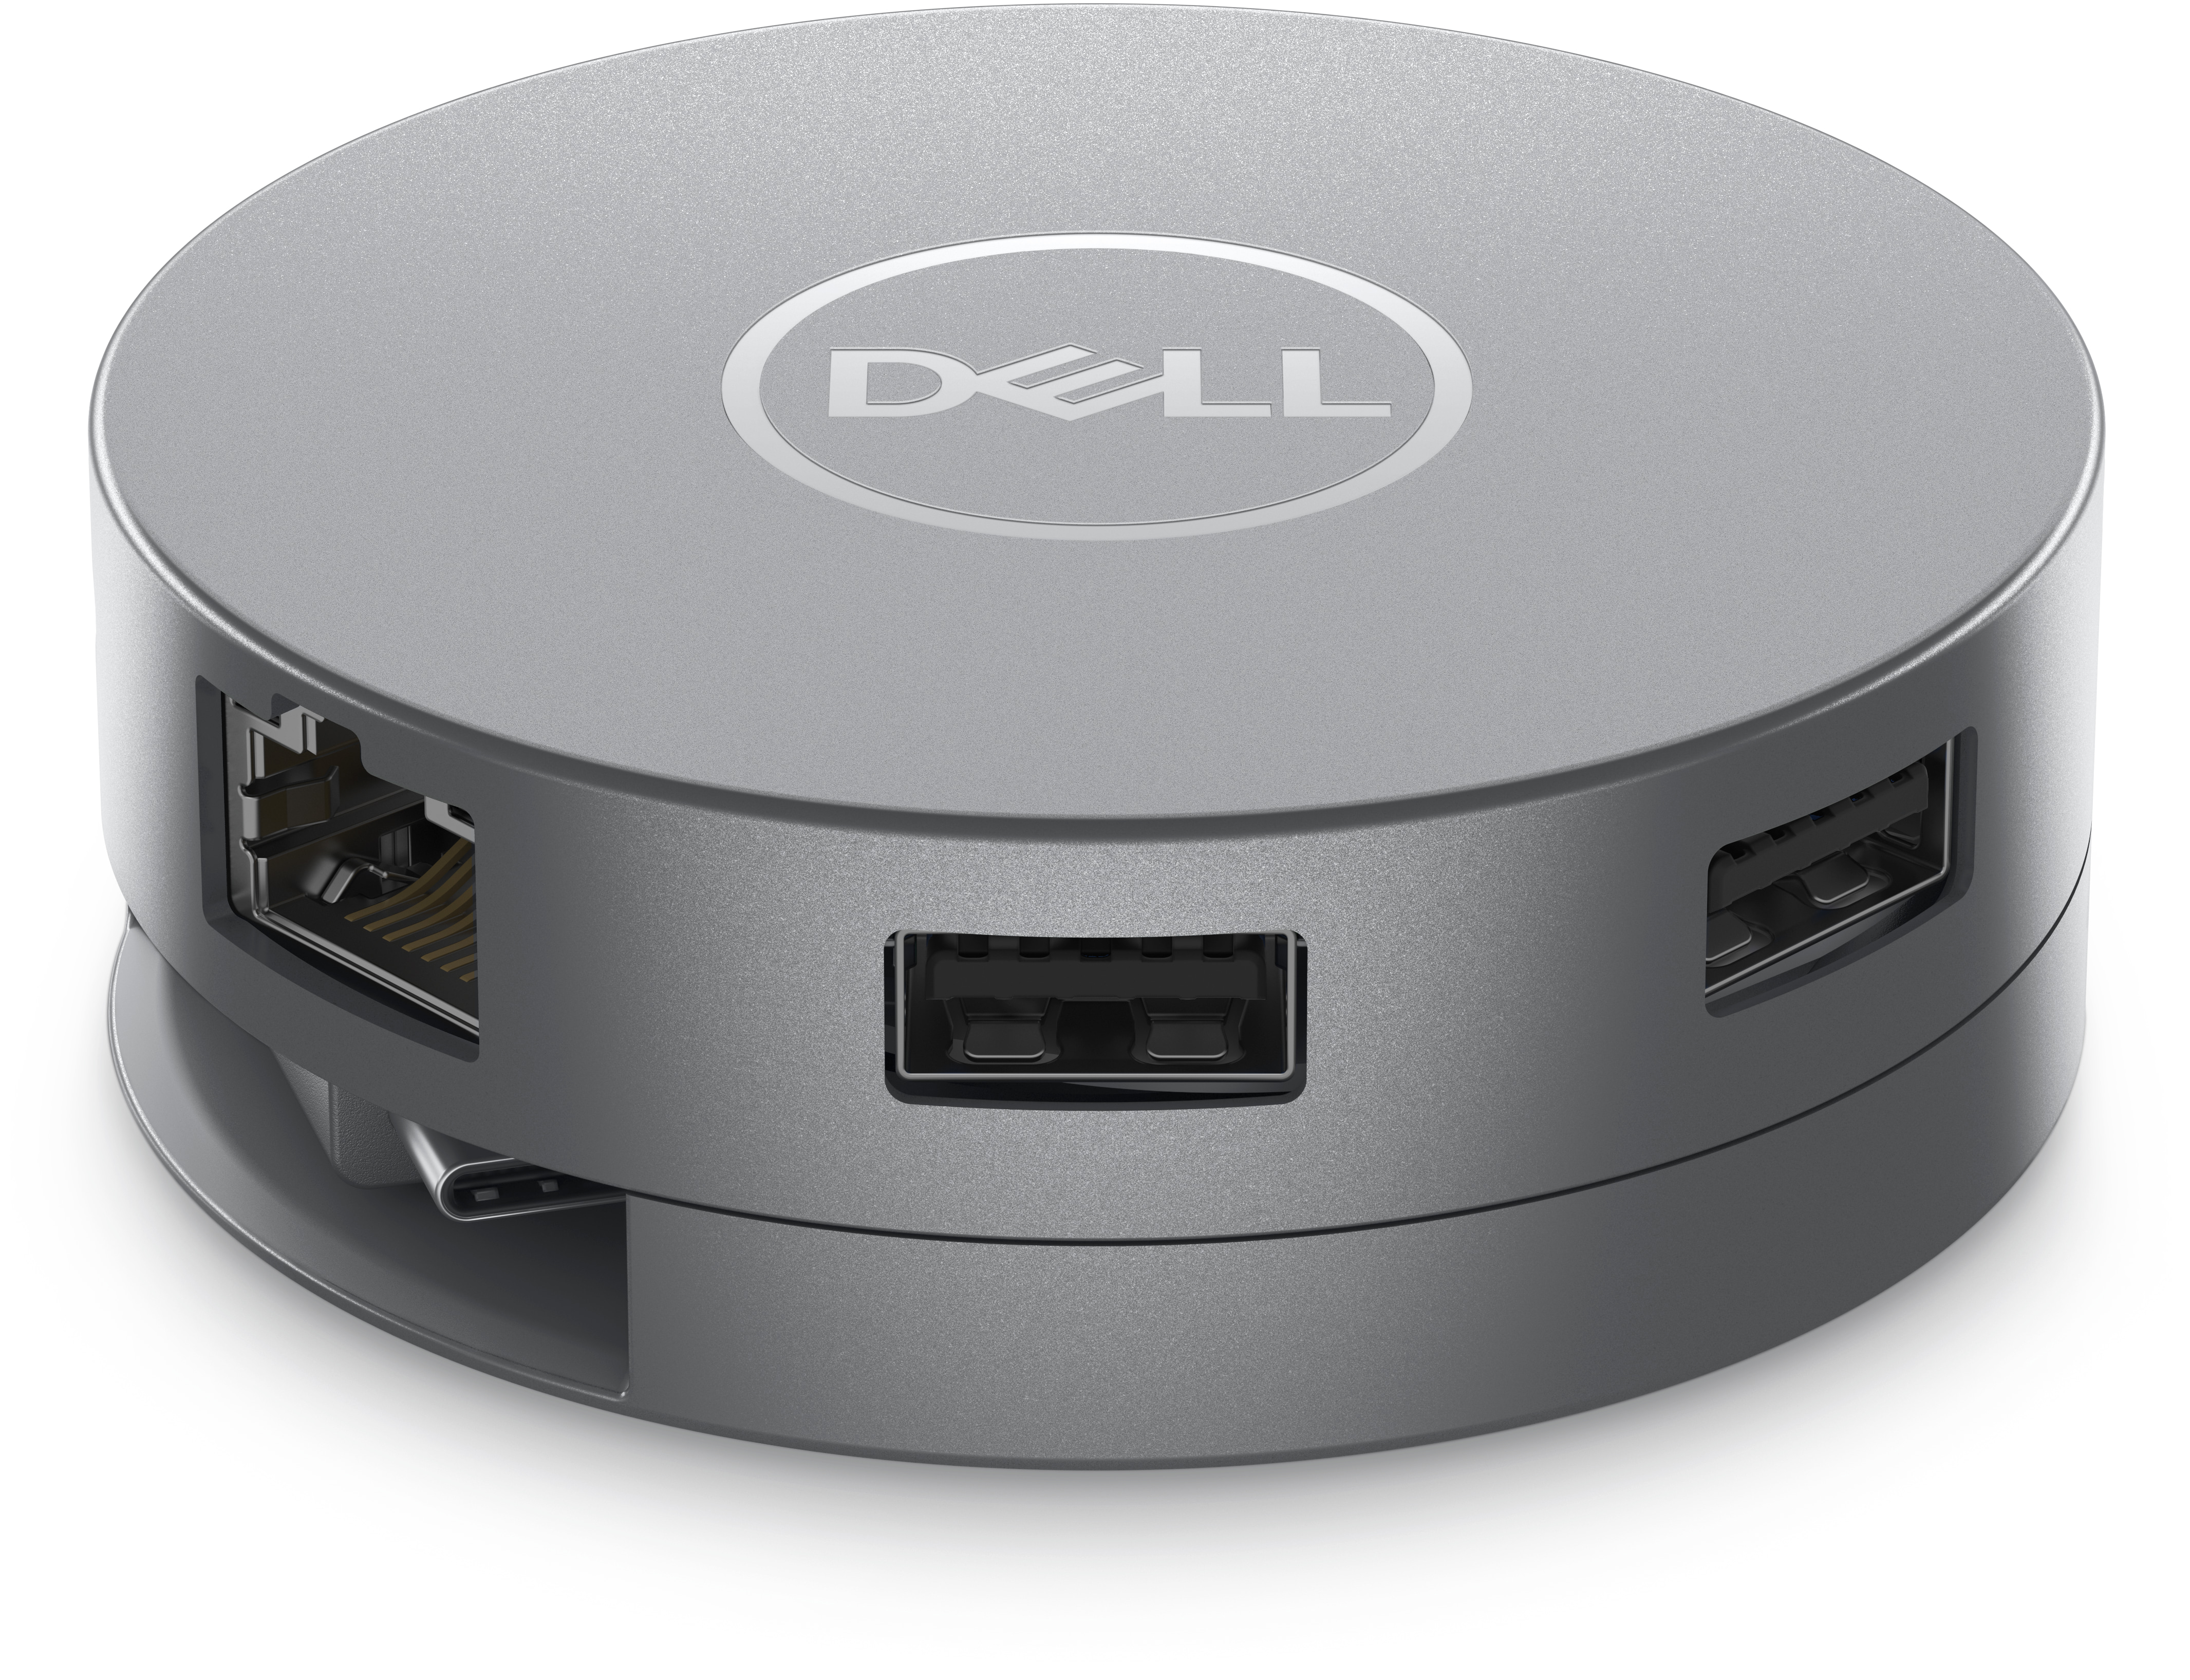 Dell USB-C Mobile (DA305) : Mobile USB Adapters | Dell